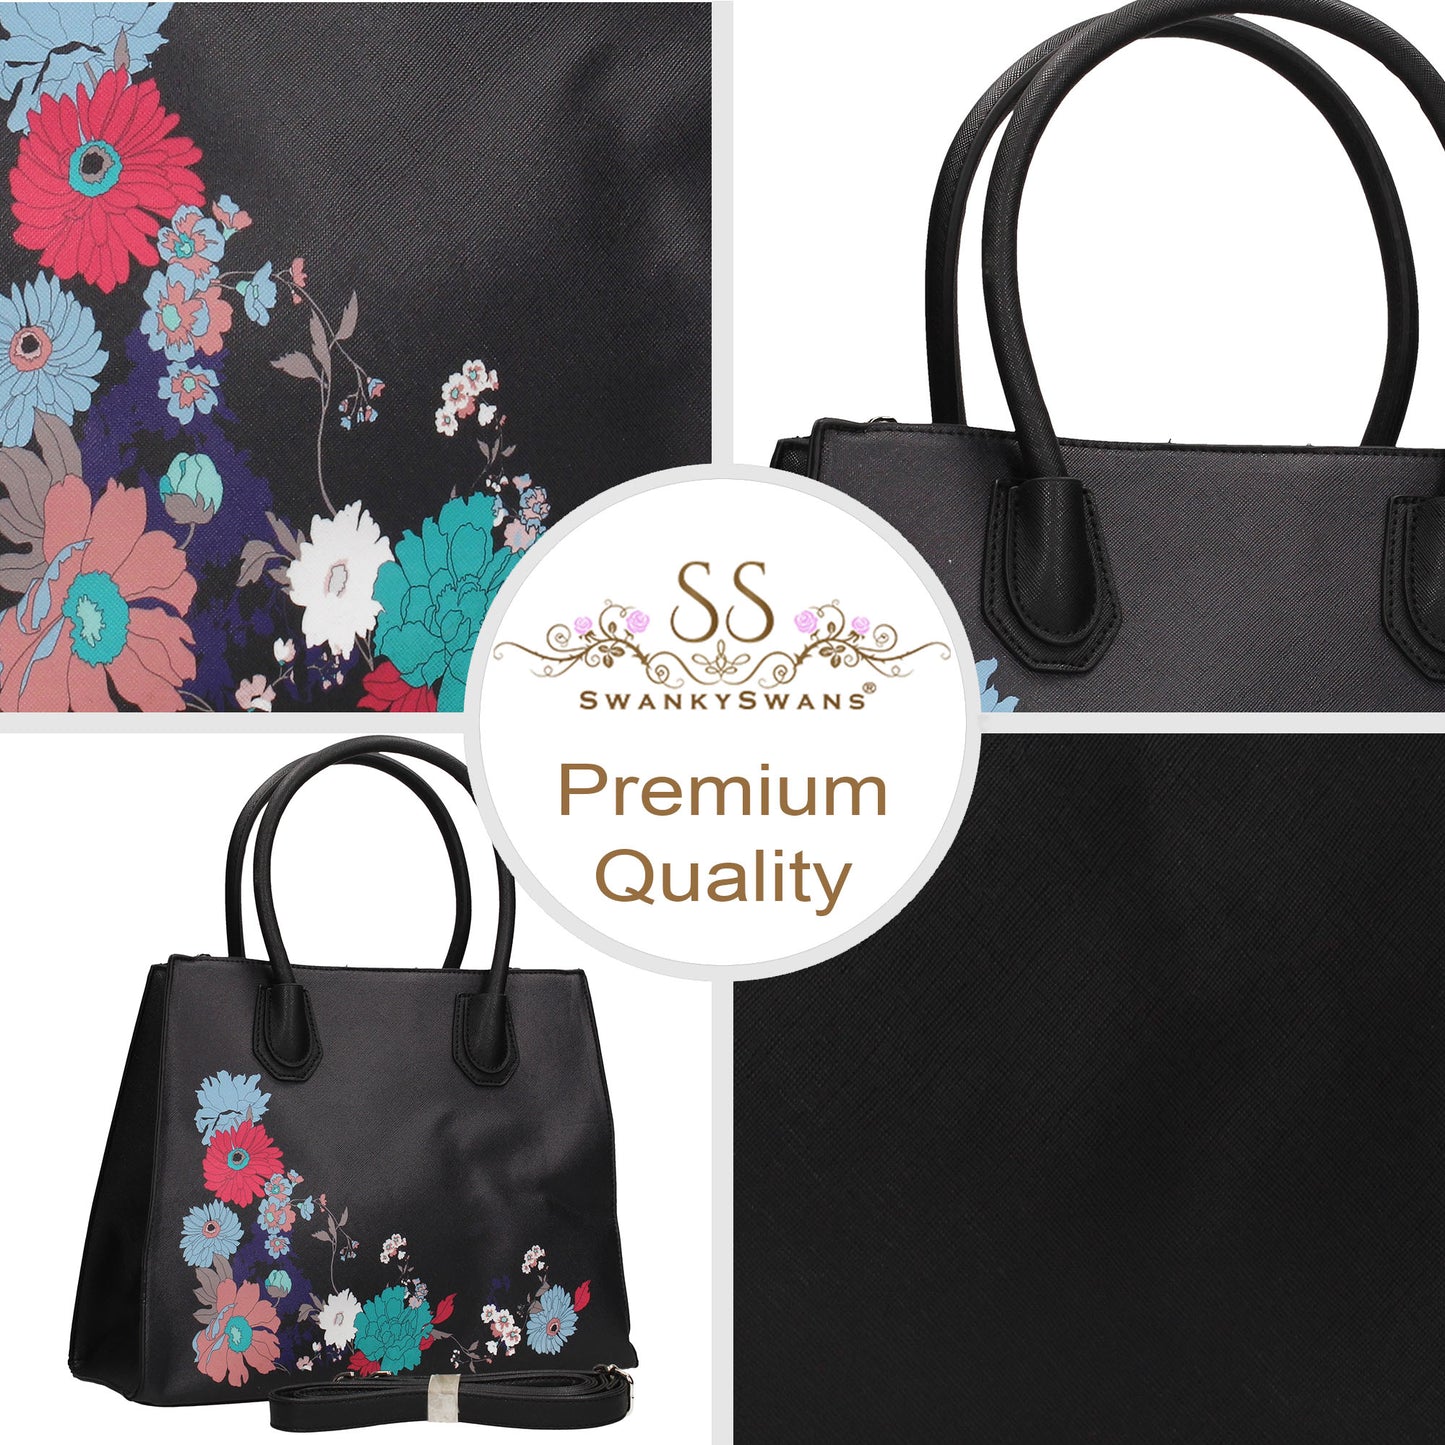 Hanna Floral Handbag BlackBeautiful Cute Animal Faux Leather Clutch Bag Handles Strap Summer School